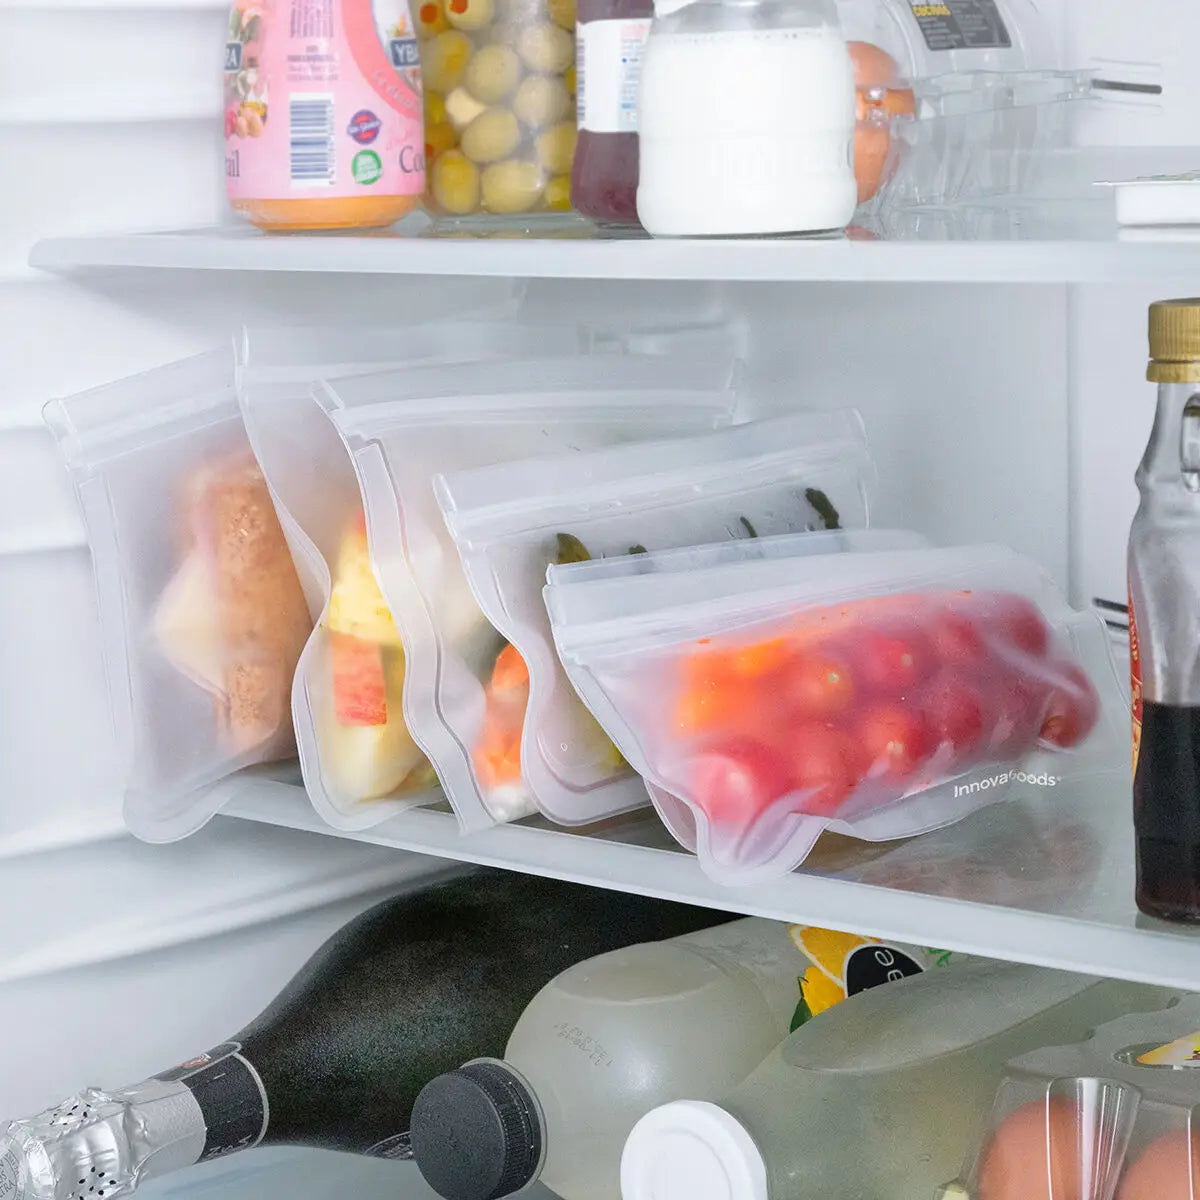 Gjenbrukbare matposer i kjøleskapet